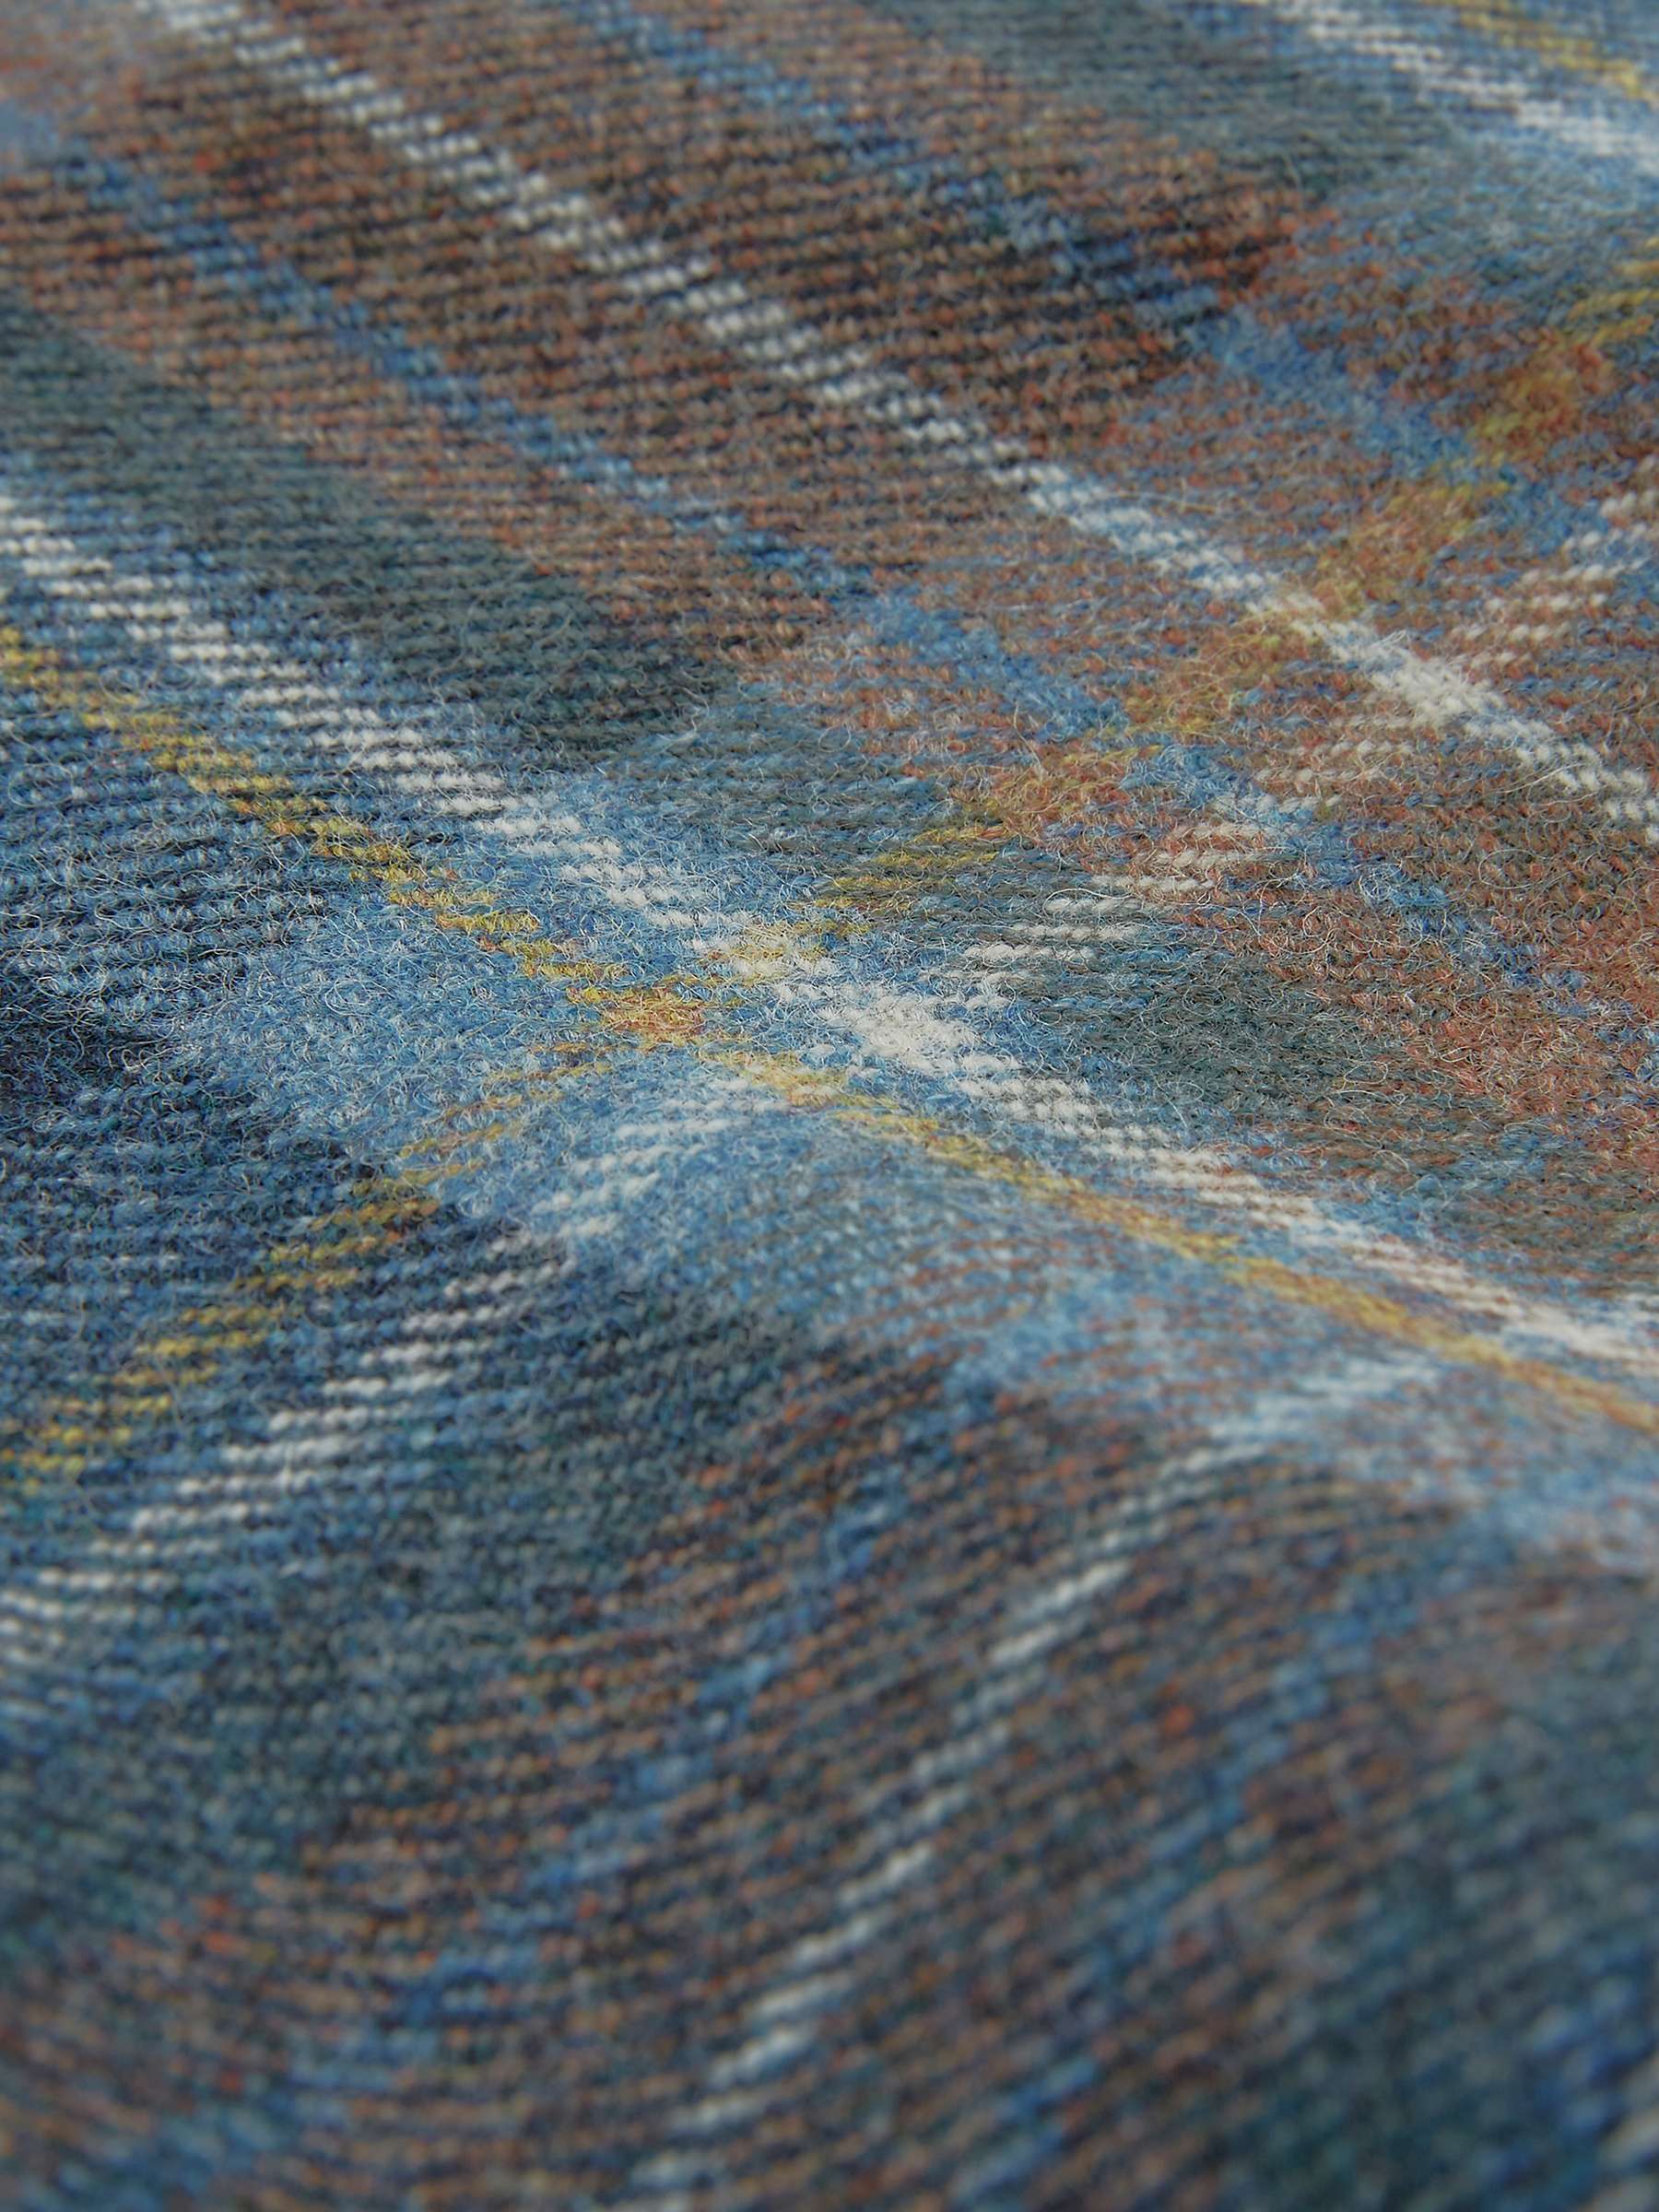 Buy Celtic & Co. The Celt Wool Skirt, Blue Ink Tartan Online at johnlewis.com